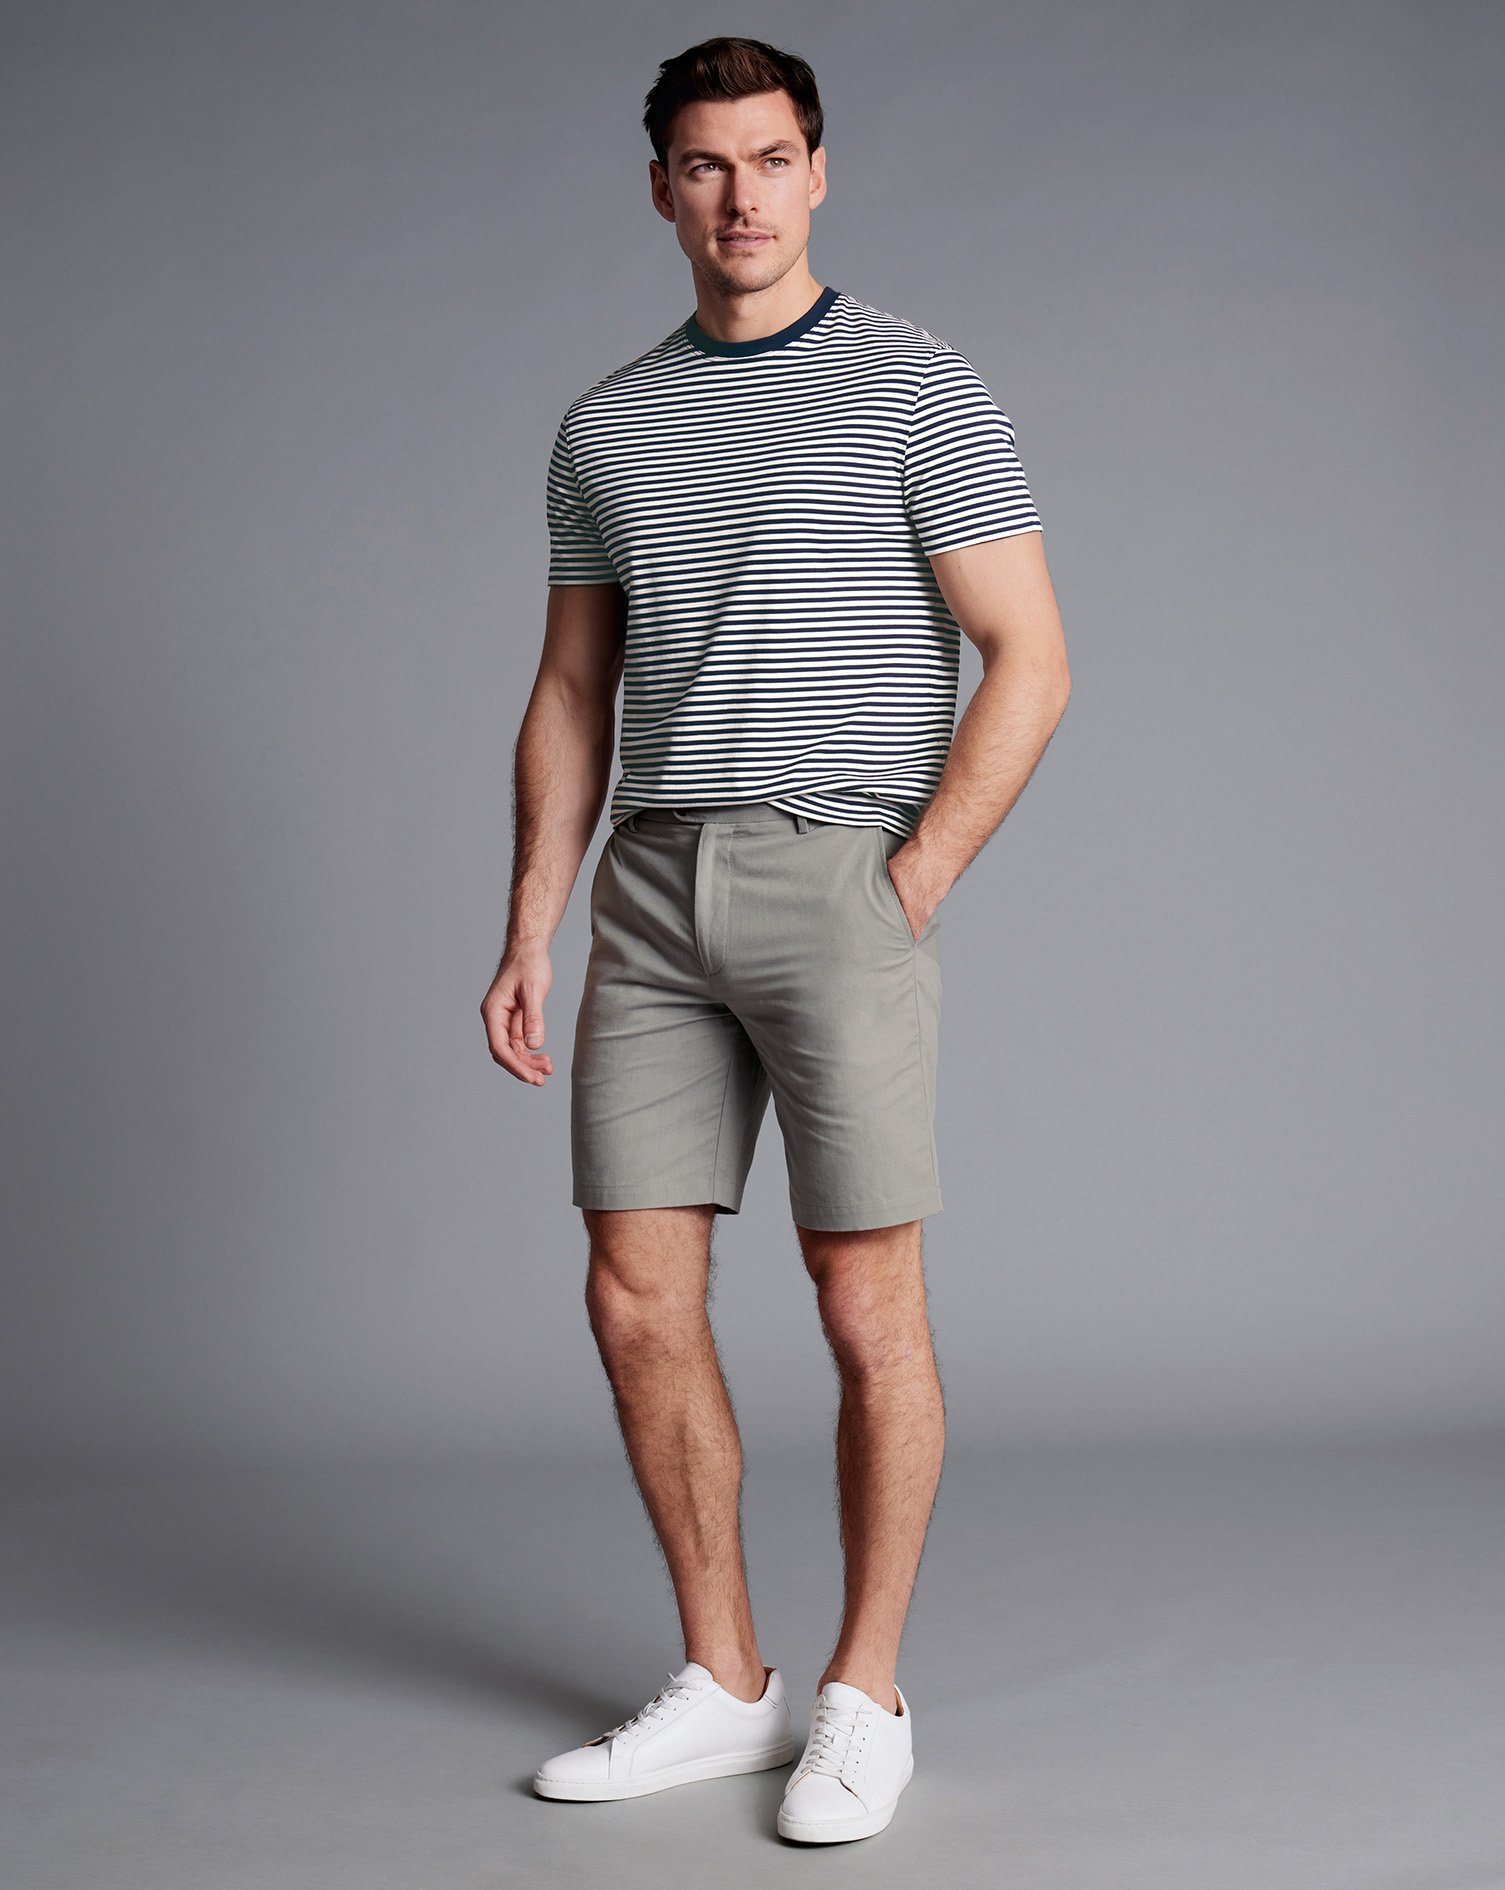 Men's Charles Tyrwhitt Cotton Shorts - Light Grey Size 40 Linen
